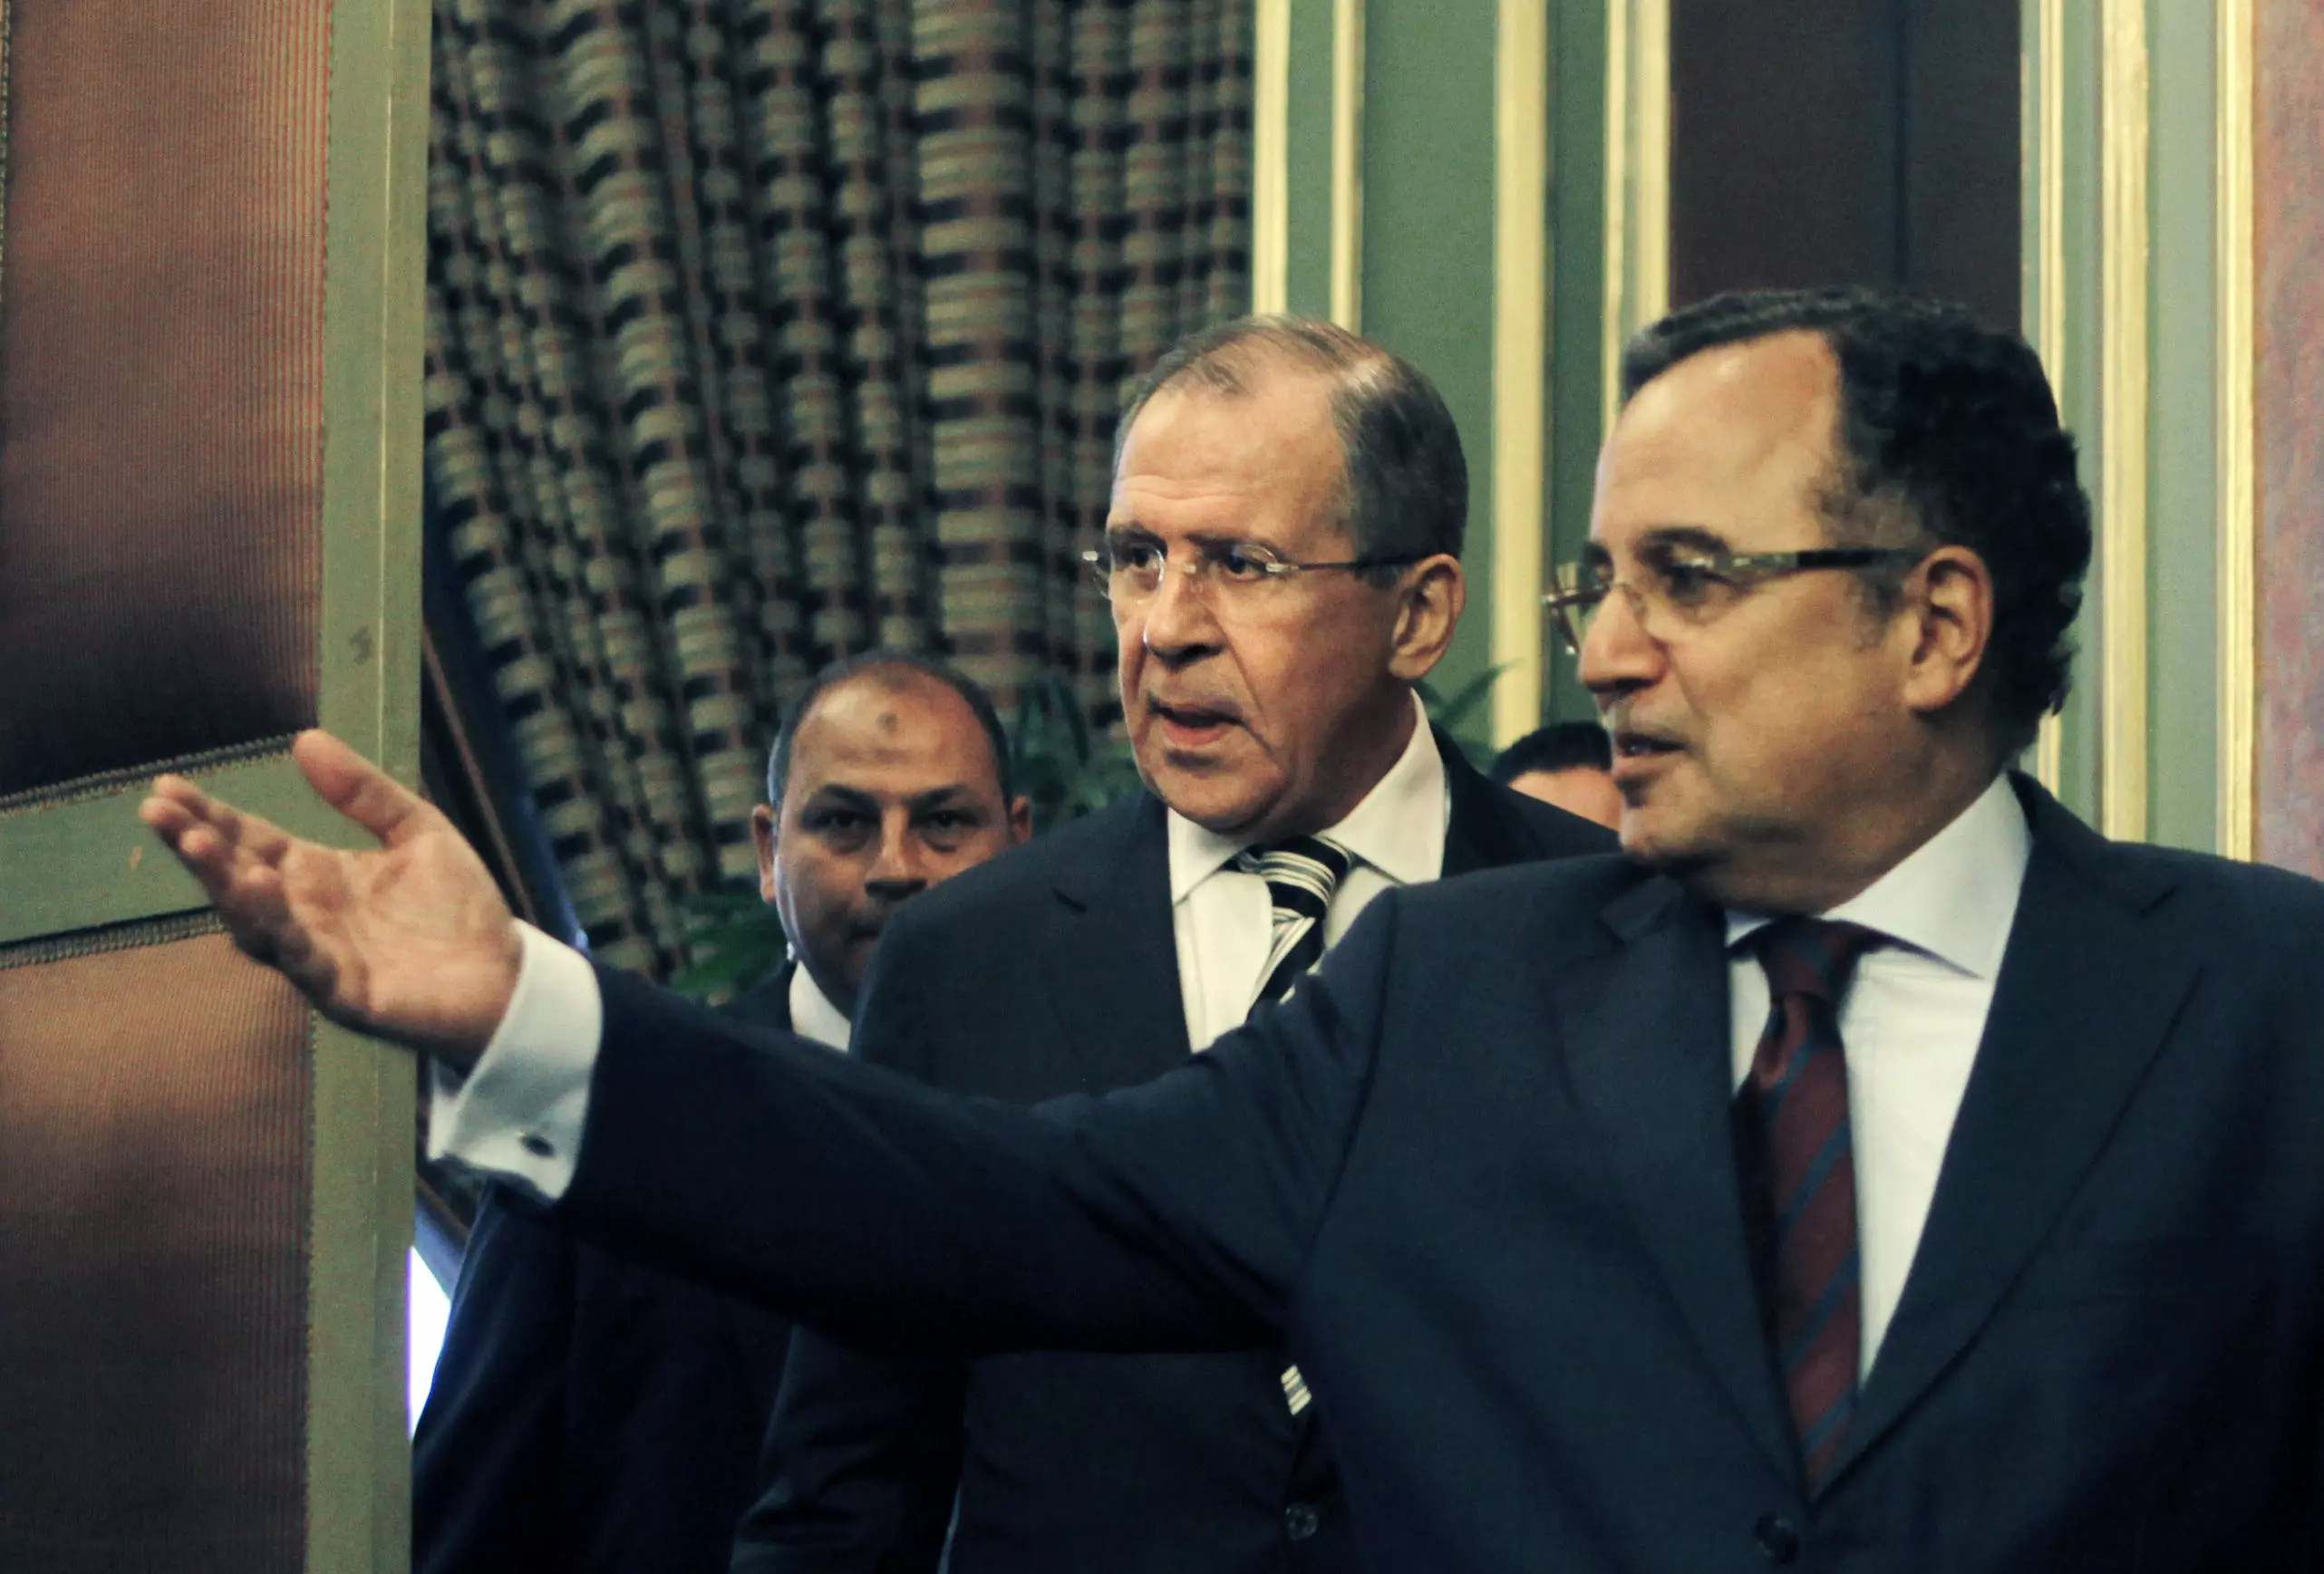 שר החוץ המצרי נביל פהמי עם עמיתו הרוסי לברוב, הבוקר